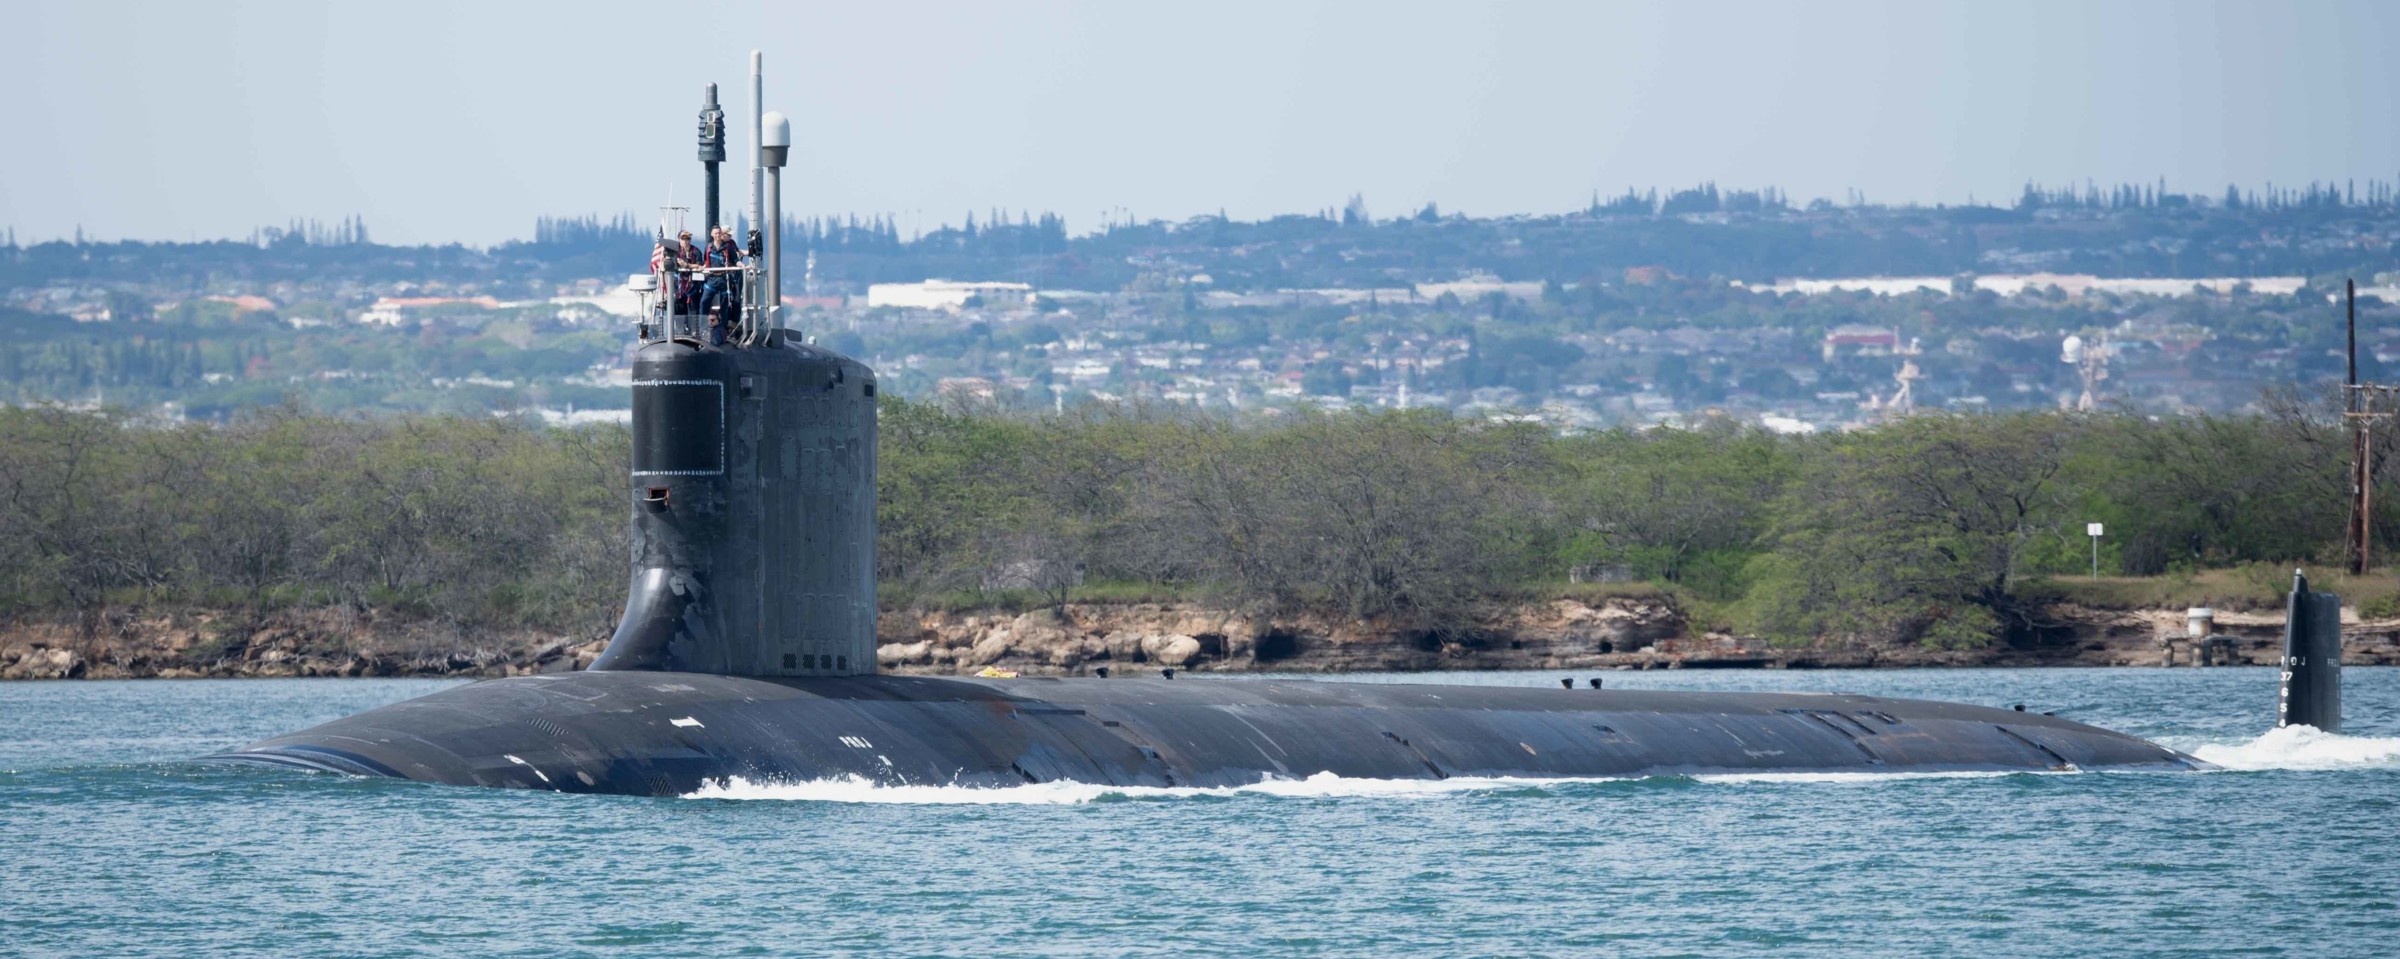 ssn-786 uss illinois virginia class attack submarine us navy 27